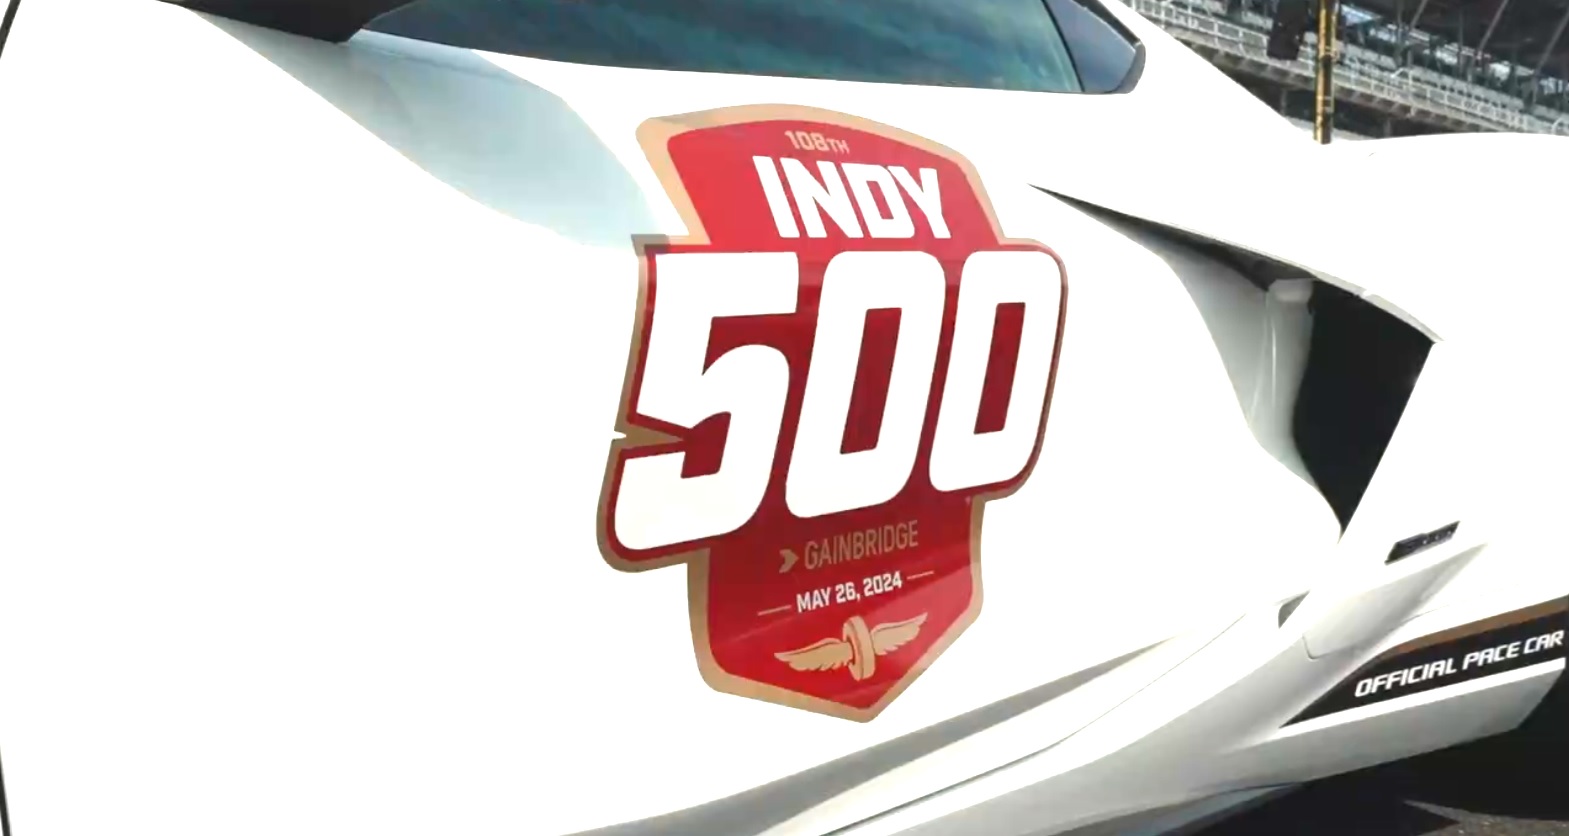 La tradicional carrera de las 500 Millas de Indianápolis se retransmitirá en directo el domingo (26)